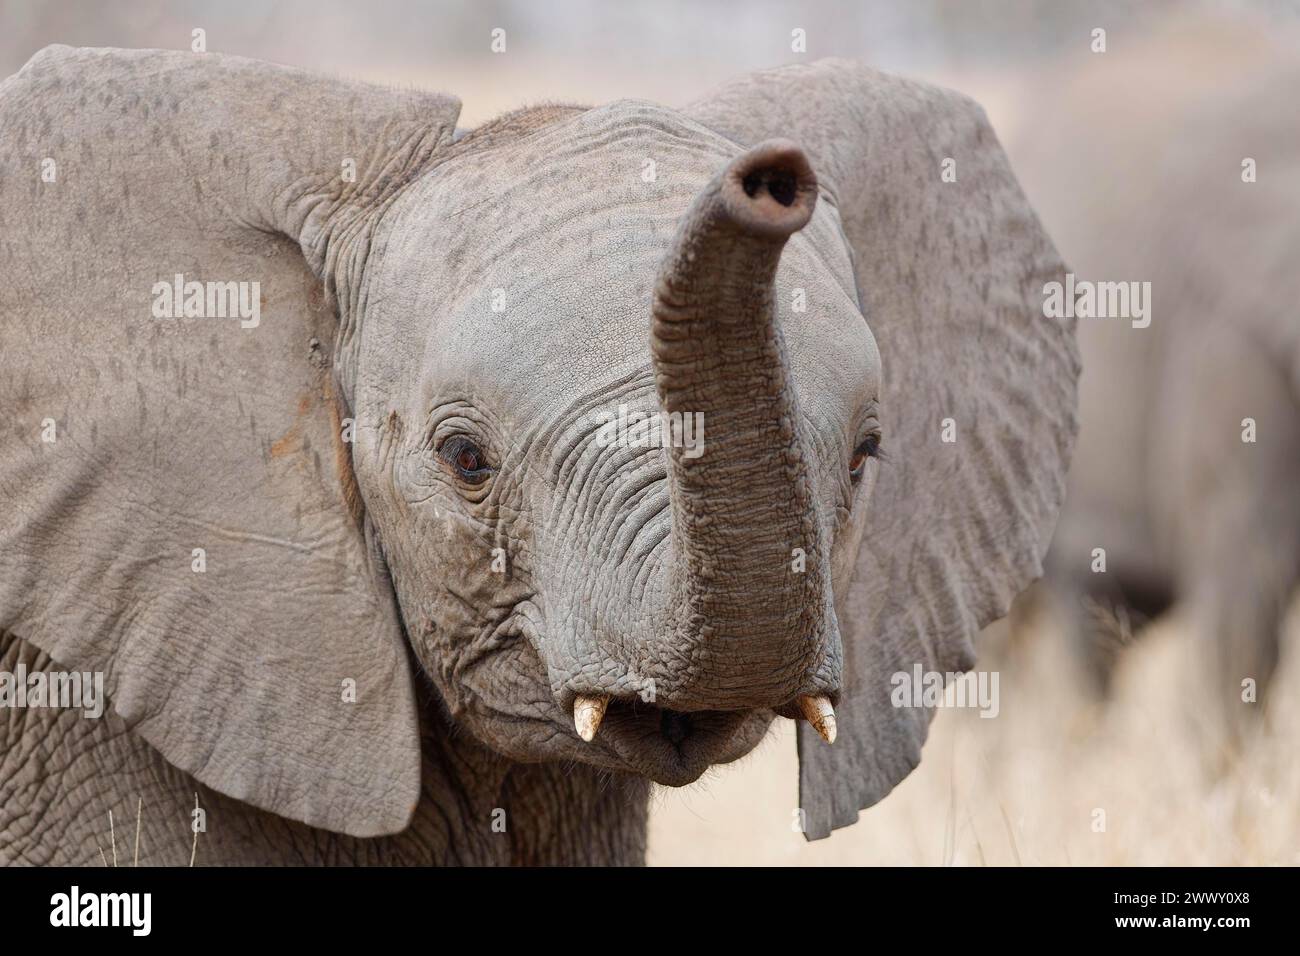 Afrikanischer Buschelefant (Loxodonta africana), männlicher Baby-Elefant, der bei leichtem Regen steht, Tierporträt, Nahaufnahme des Kopfes, Kruger-Nationalpark, South AFR Stockfoto